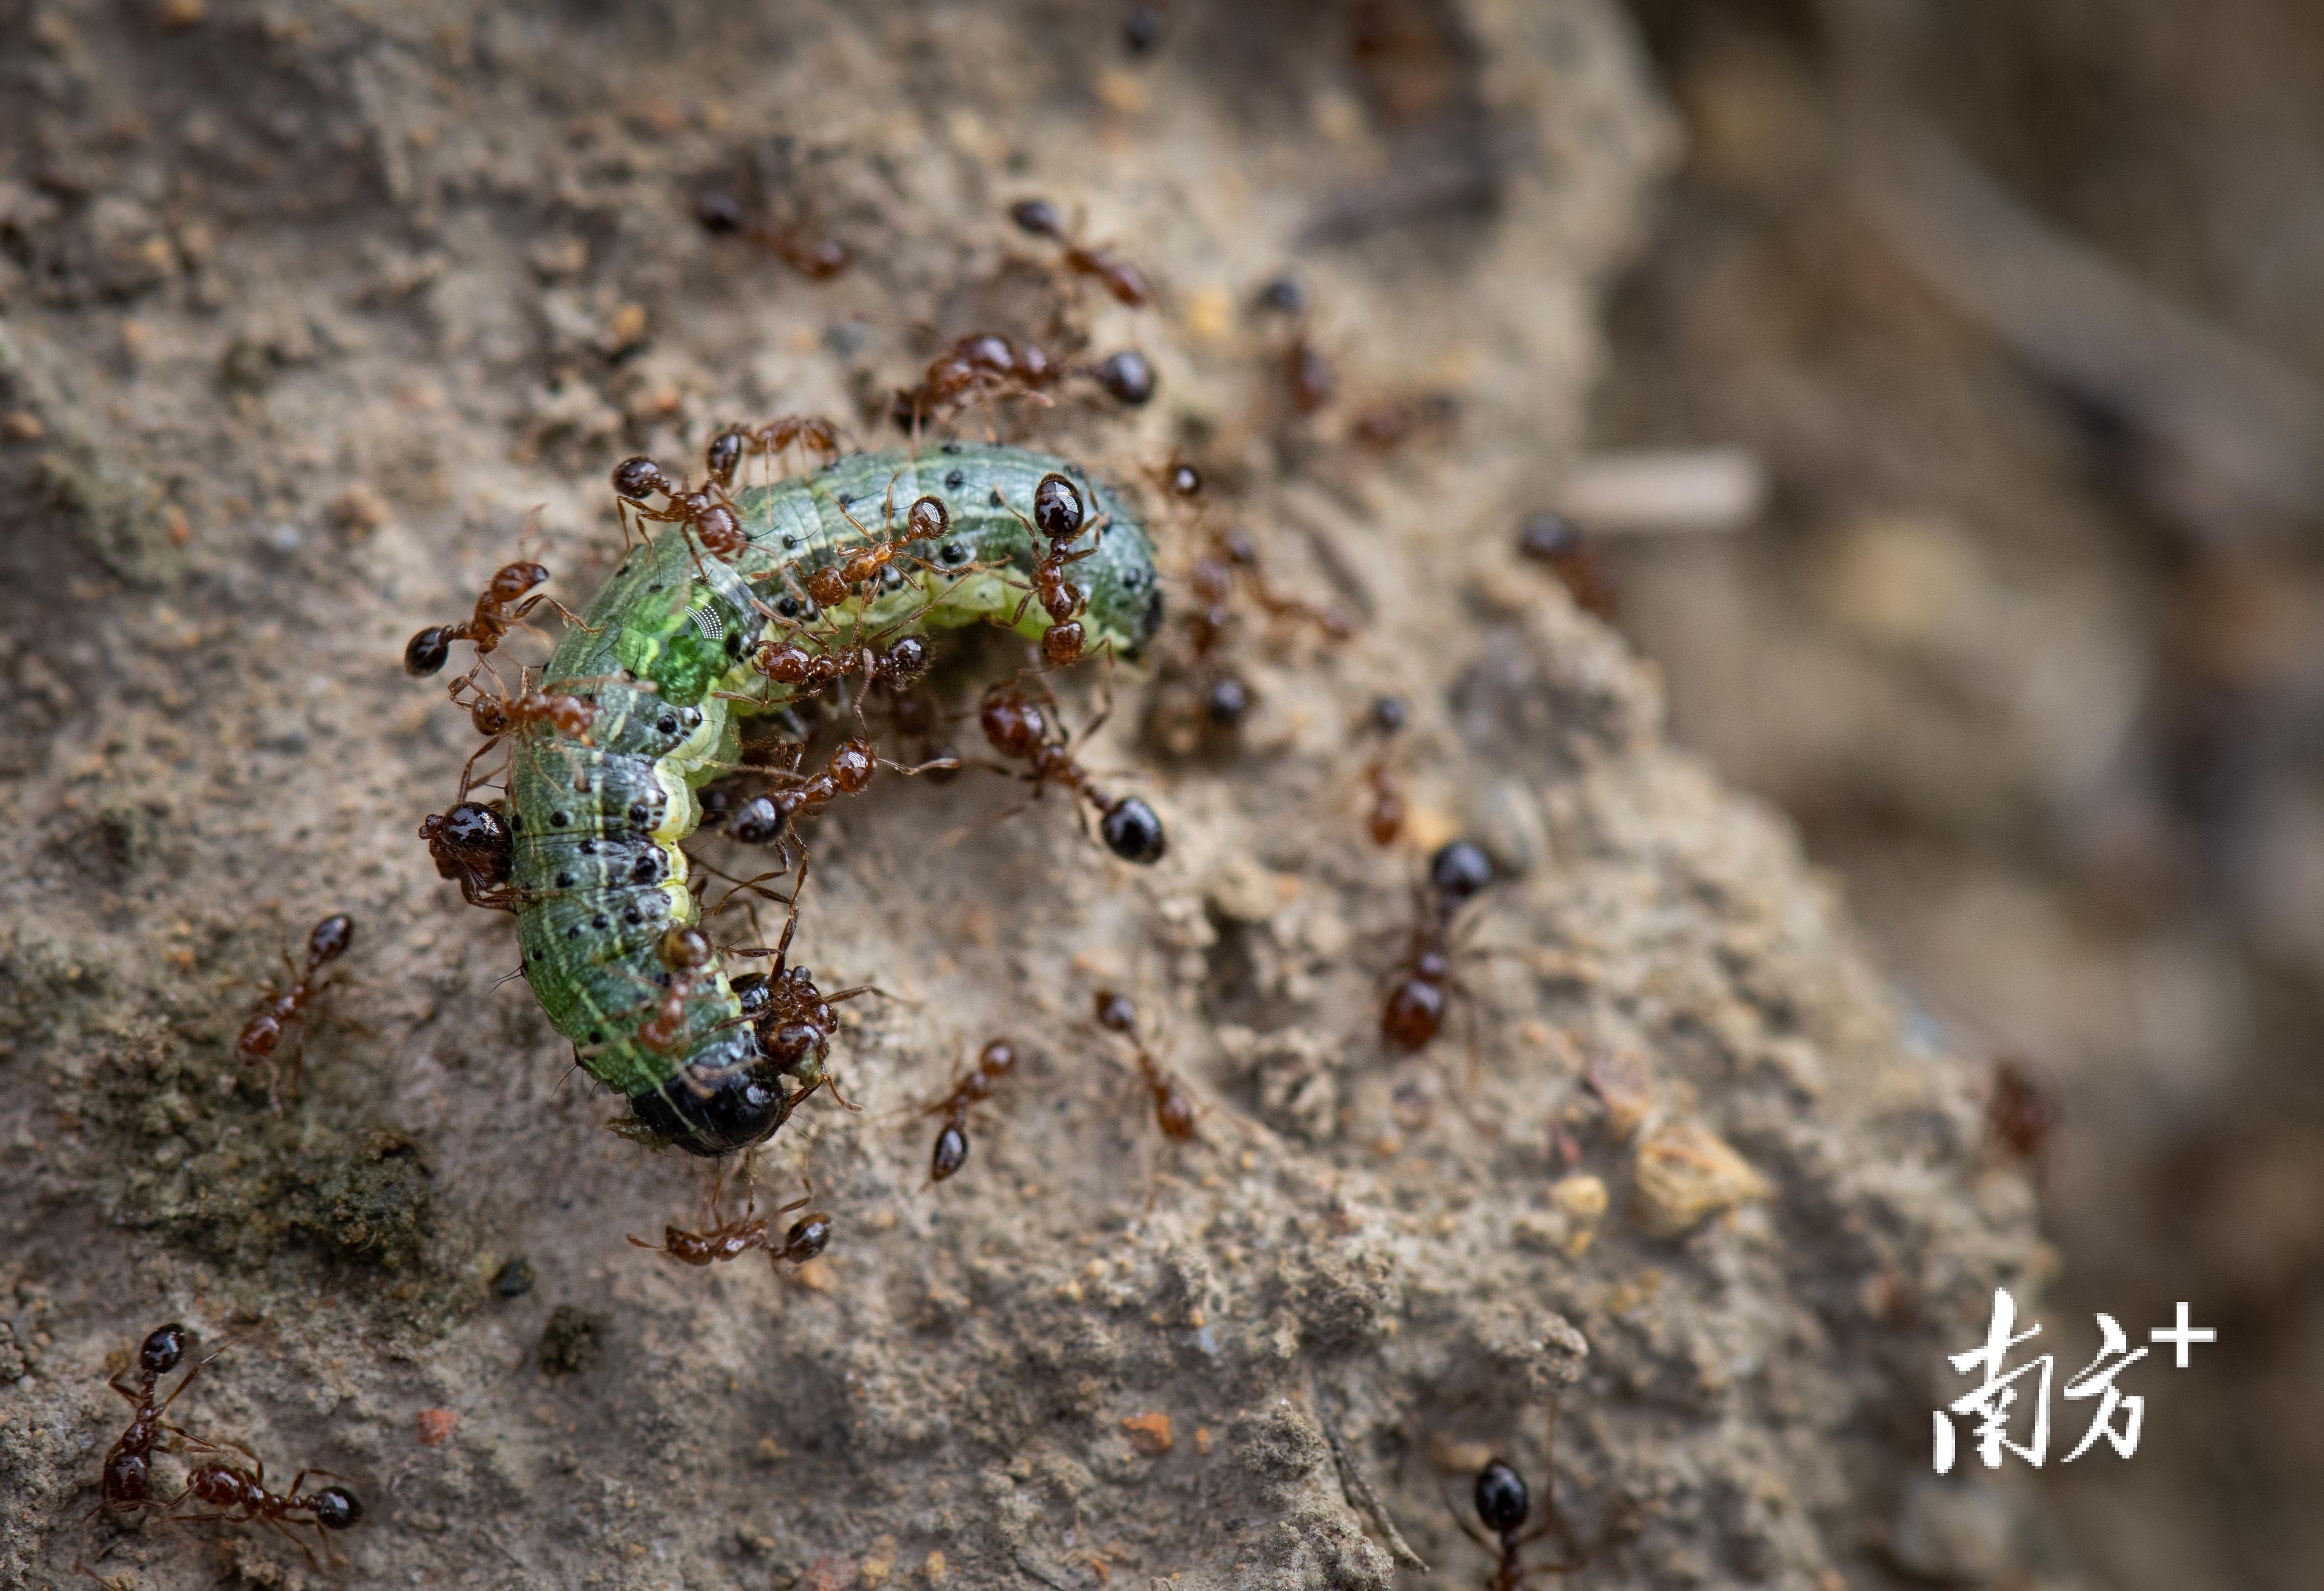 一条棉铃虫幼虫掉在蚁巢外围，一群红火蚁立马跑过来攻击，不到几分钟就被红火蚁杀死。